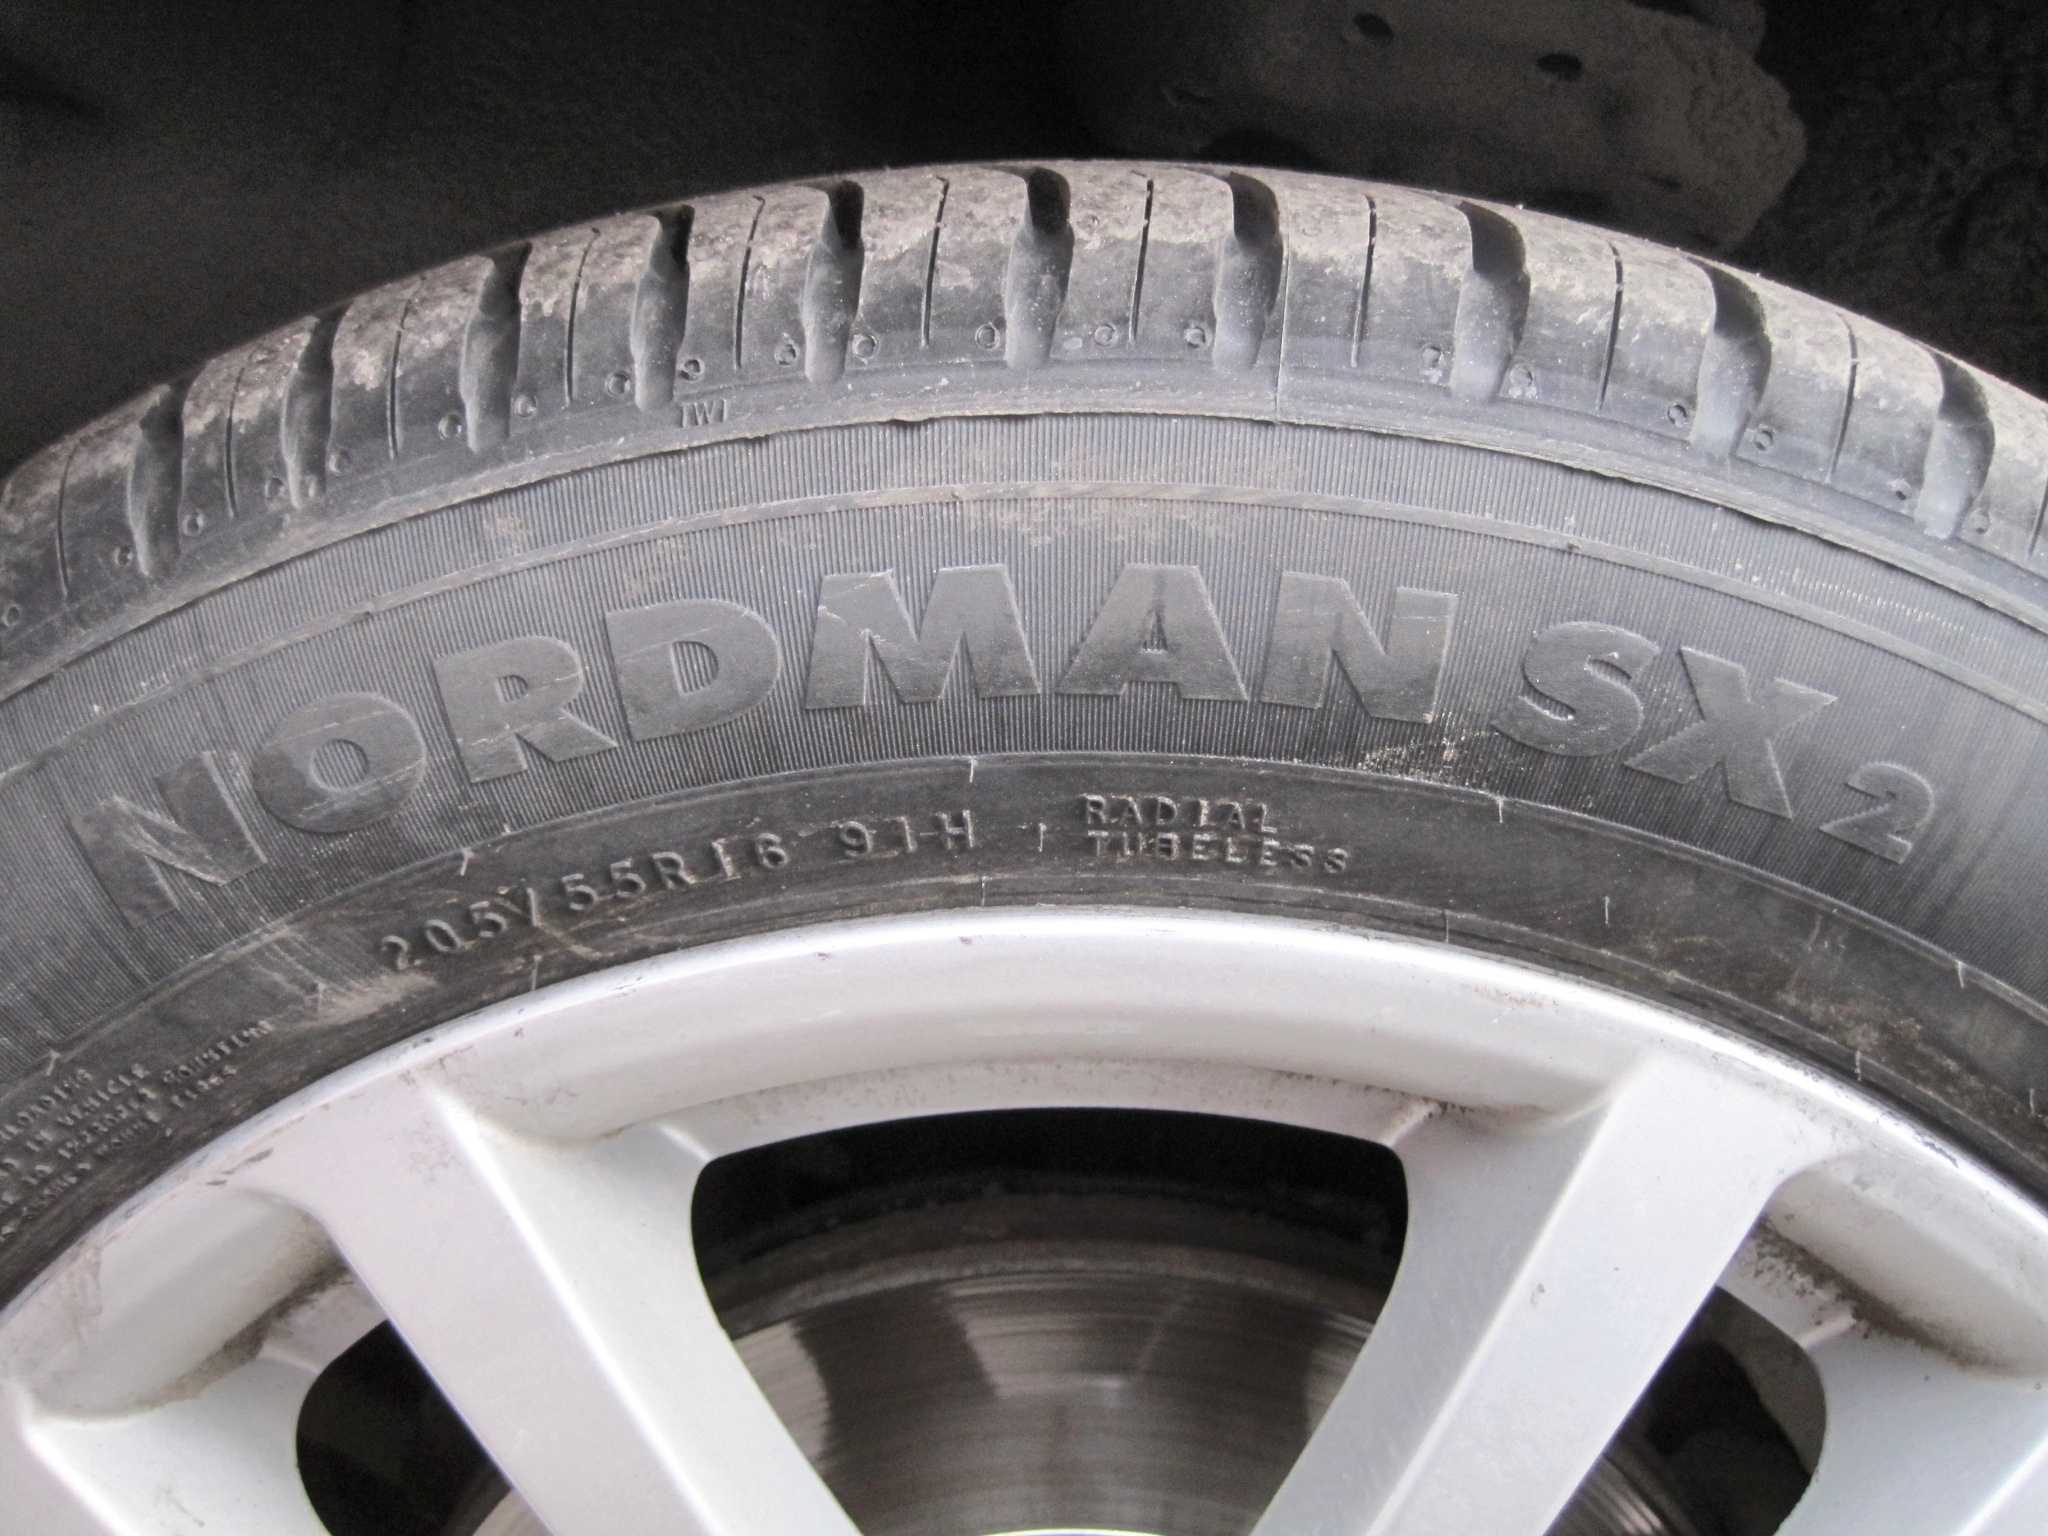 Ikon tyres nordman sx3 195 55 r16